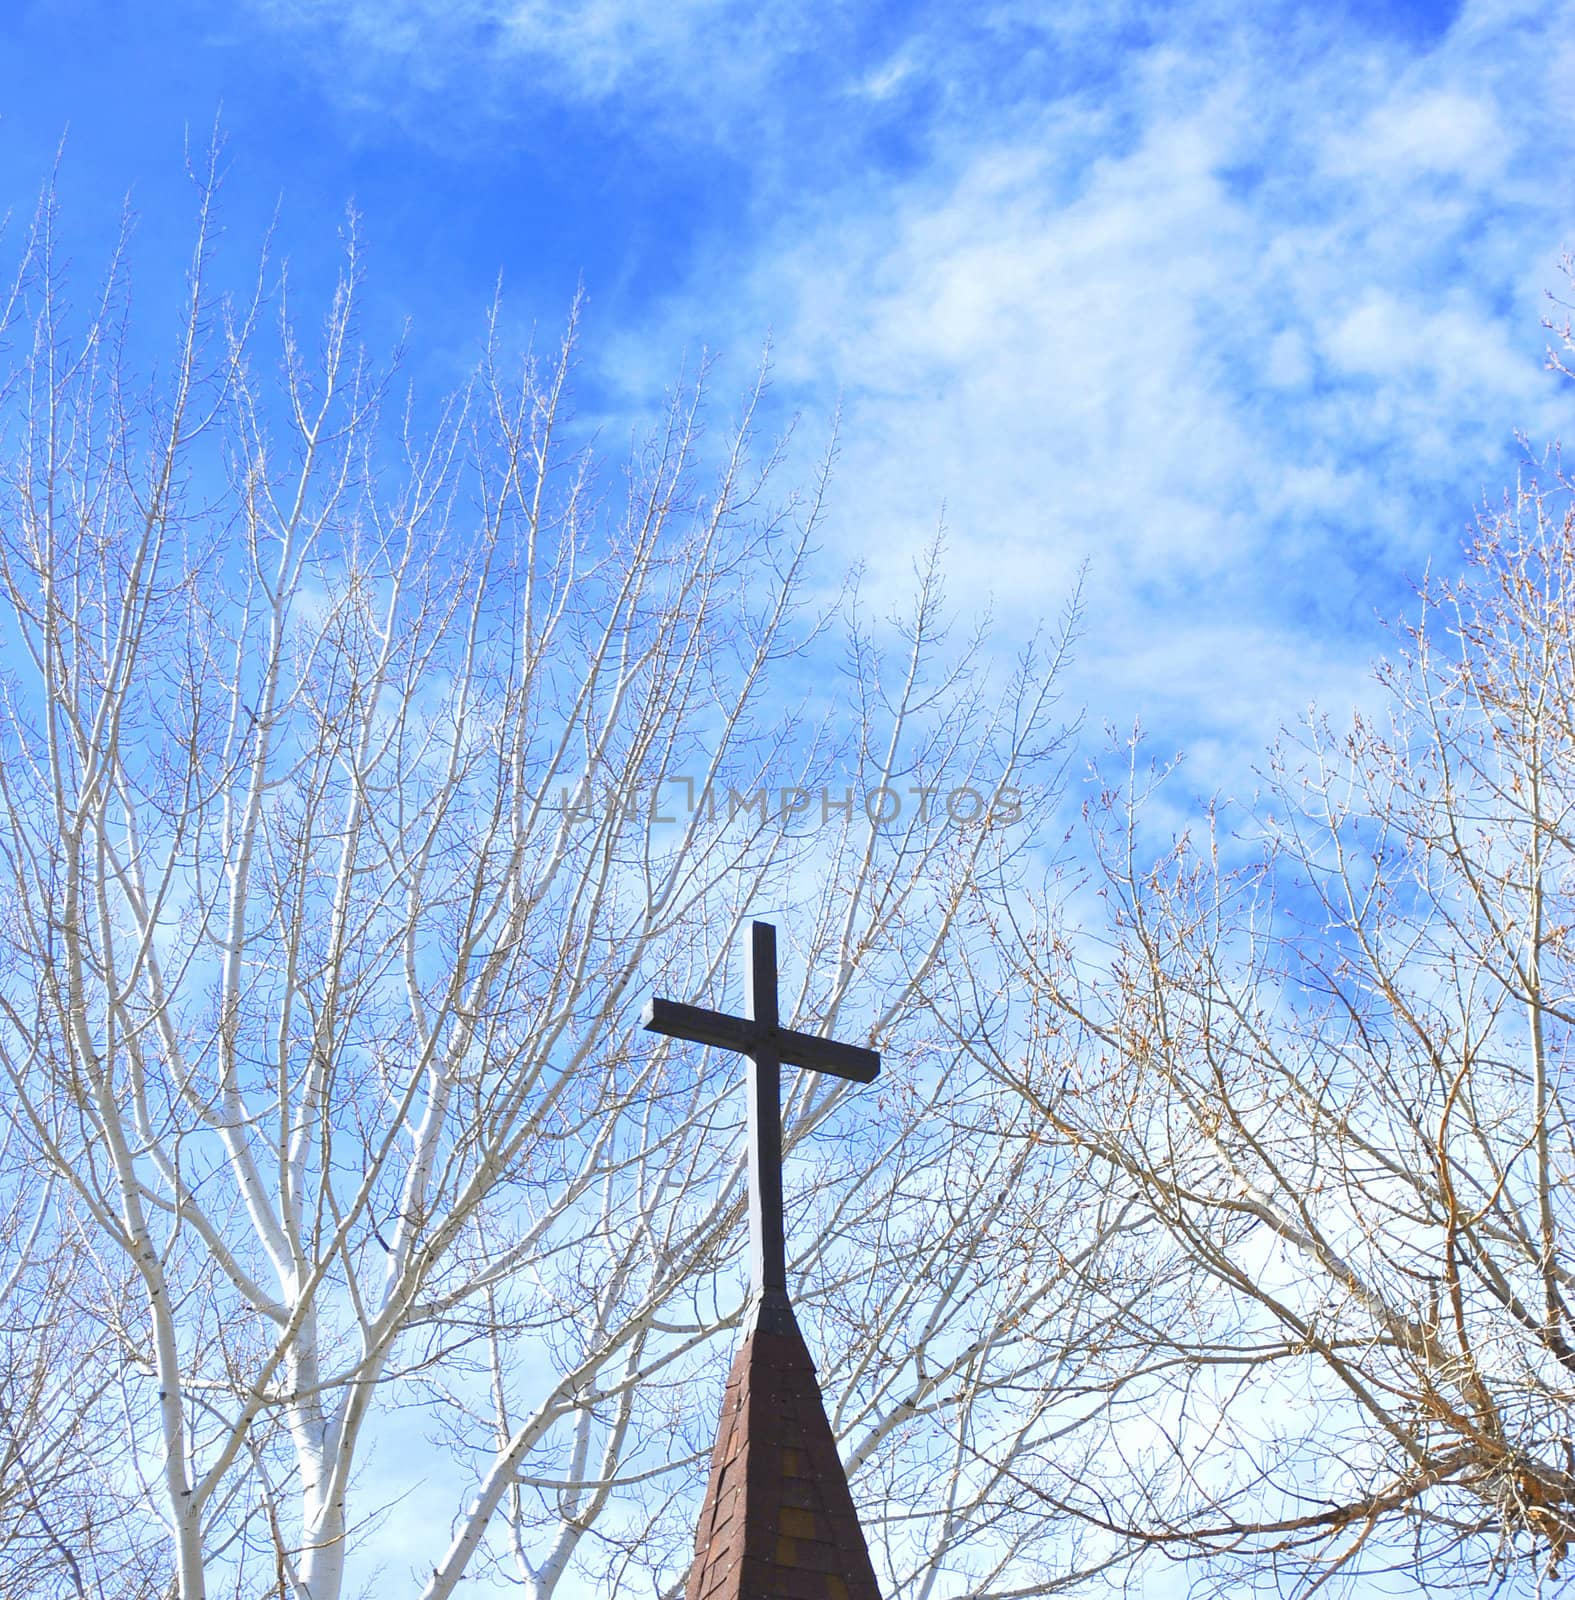 Church steeple against a clear blue sky.